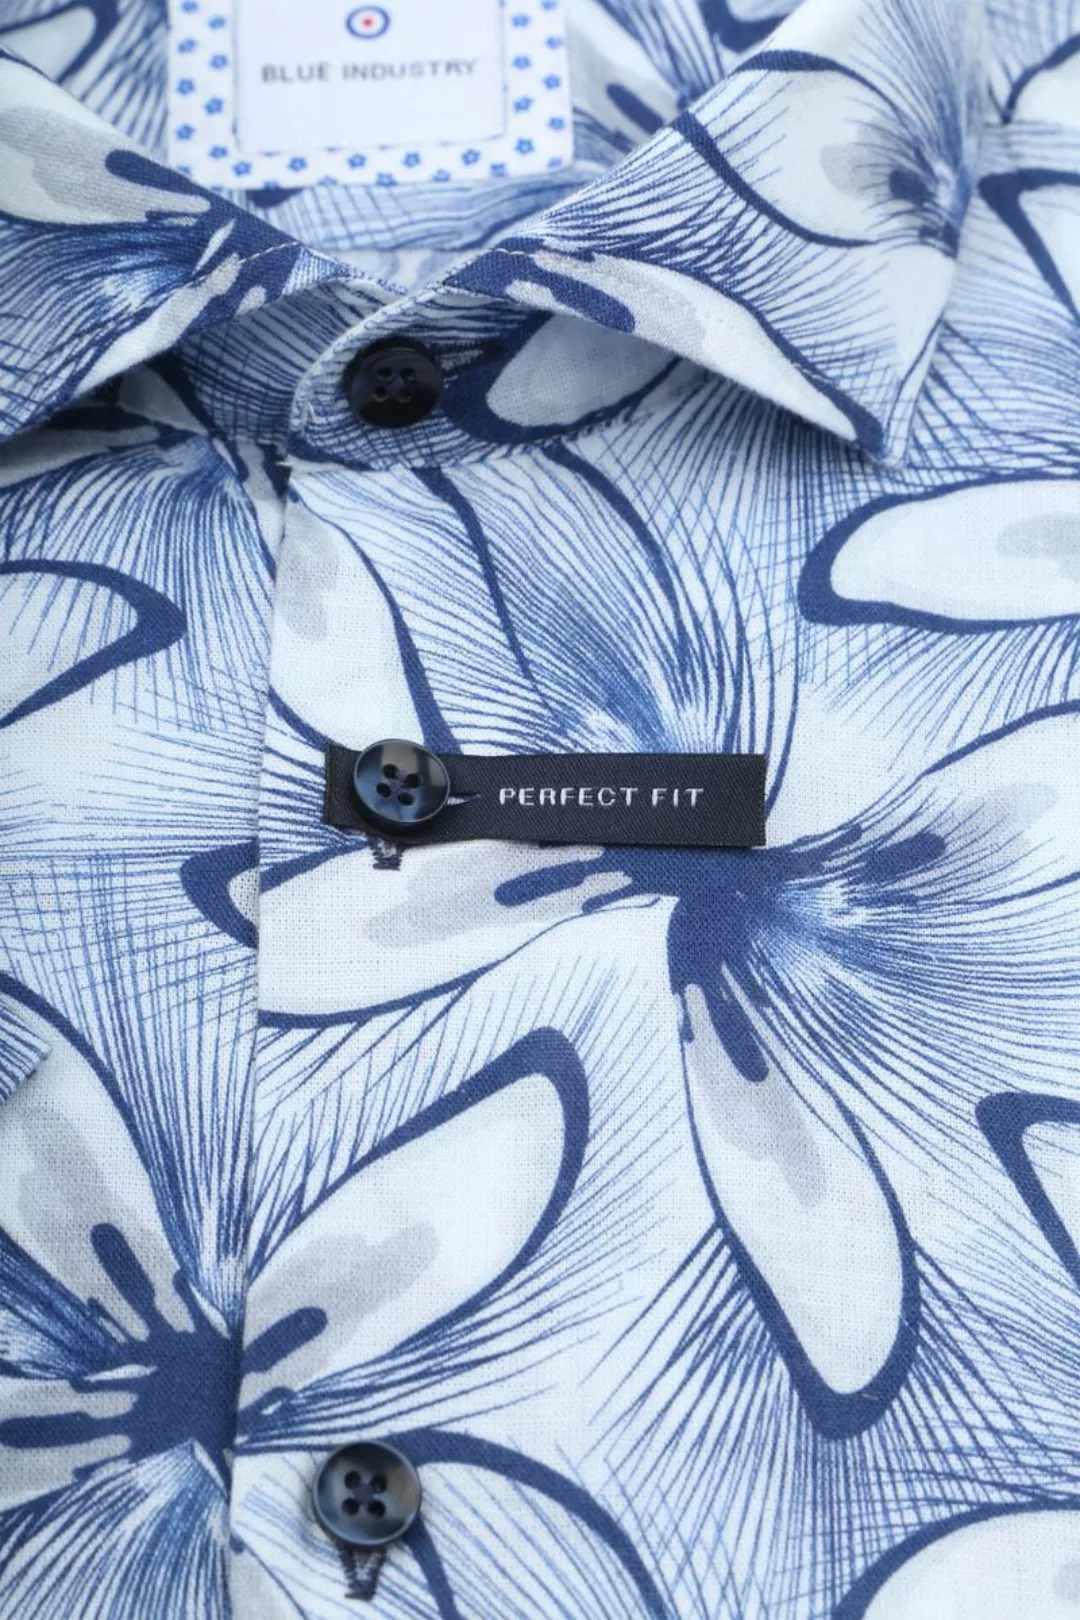 Blue Industry Short Sleeve Hemd Leinen Druck Blau - Größe 43 günstig online kaufen